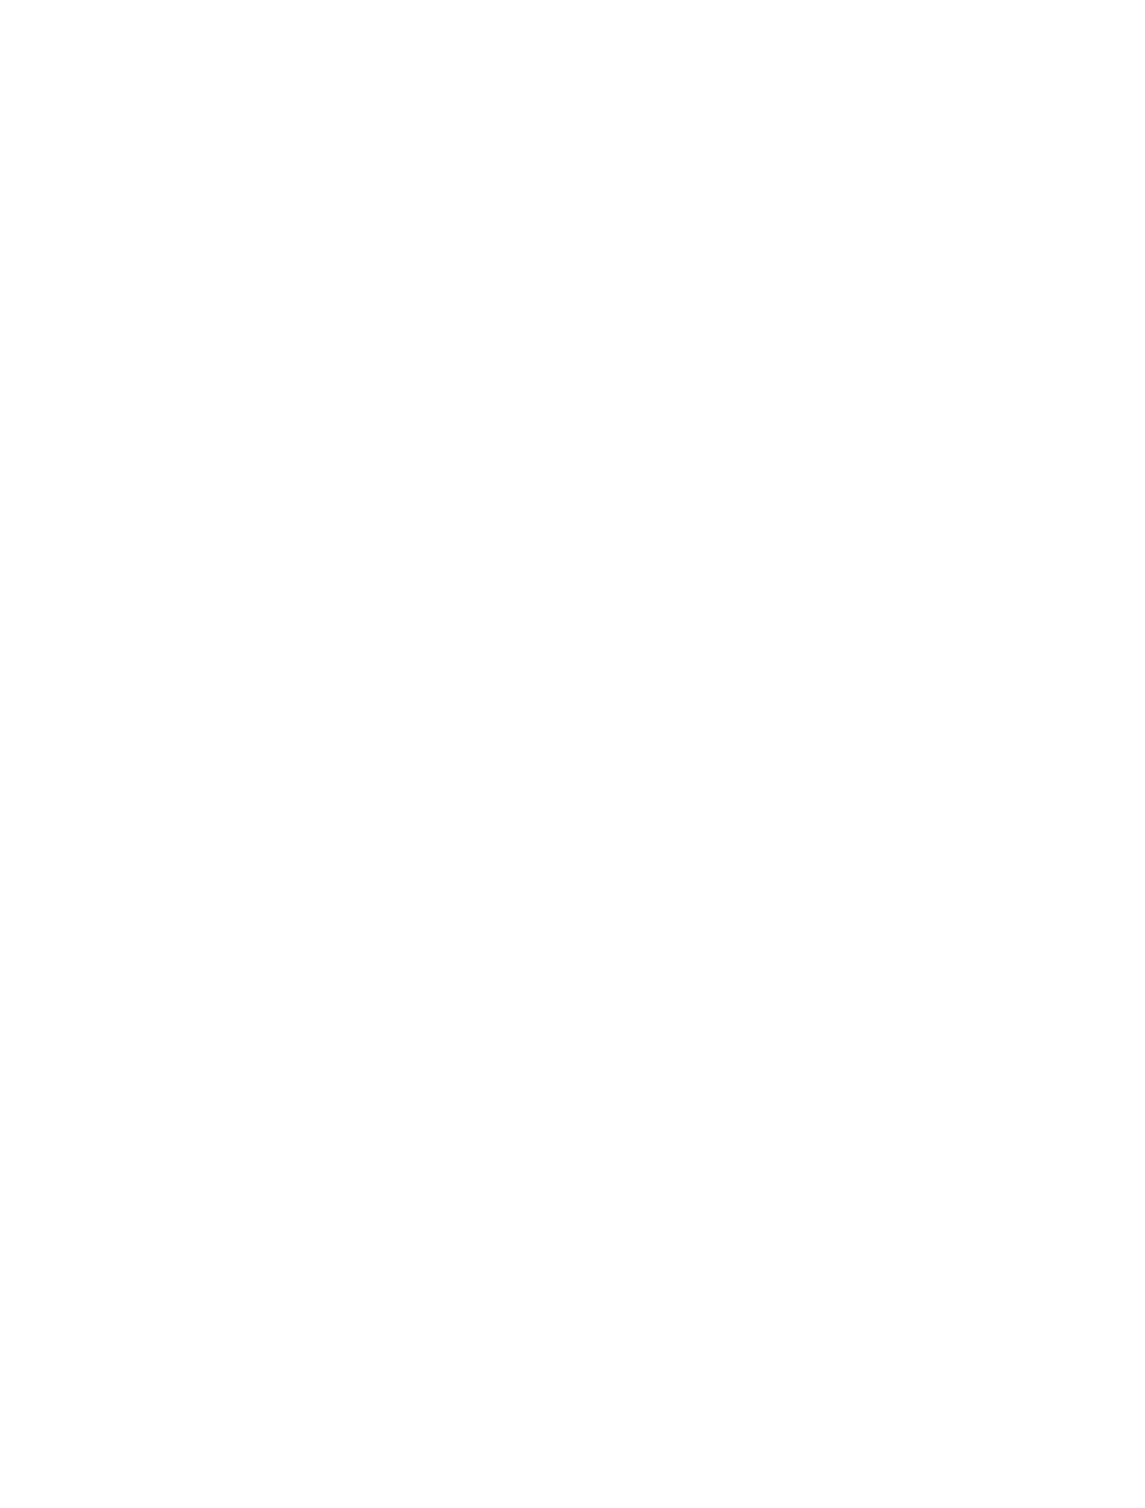 J.S.B.Co. logo large for dark backgrounds (transparent PNG)